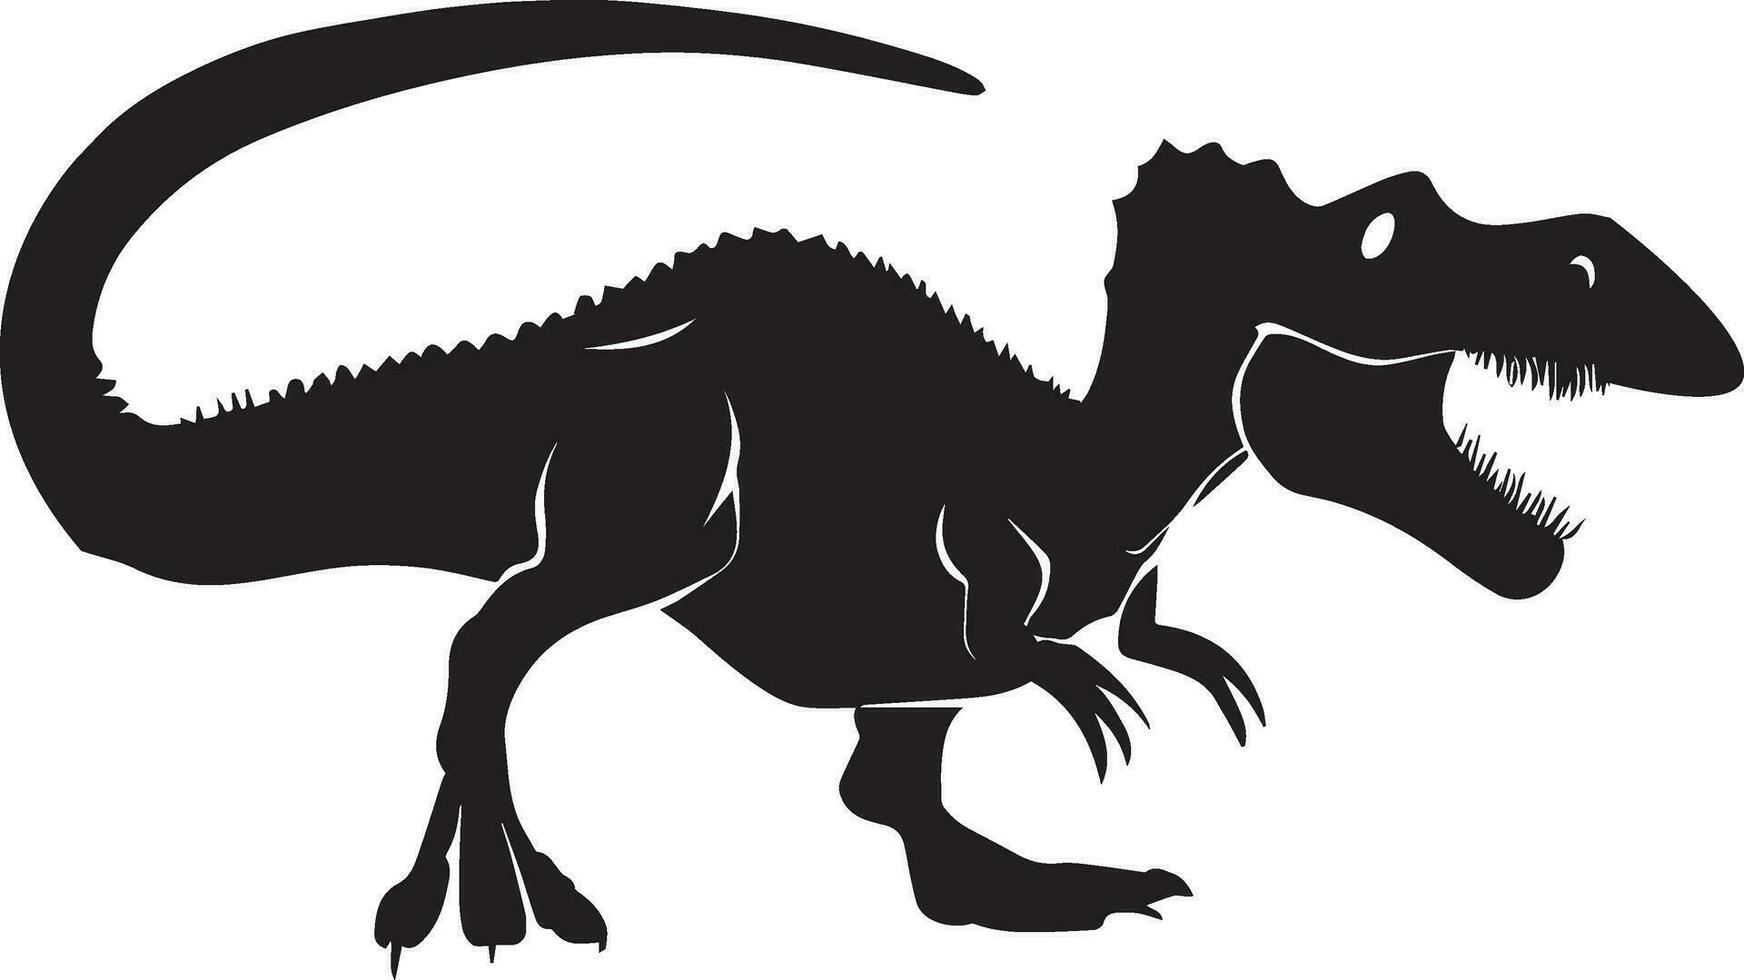 dinossauro vetor silhueta ilustração Preto cor